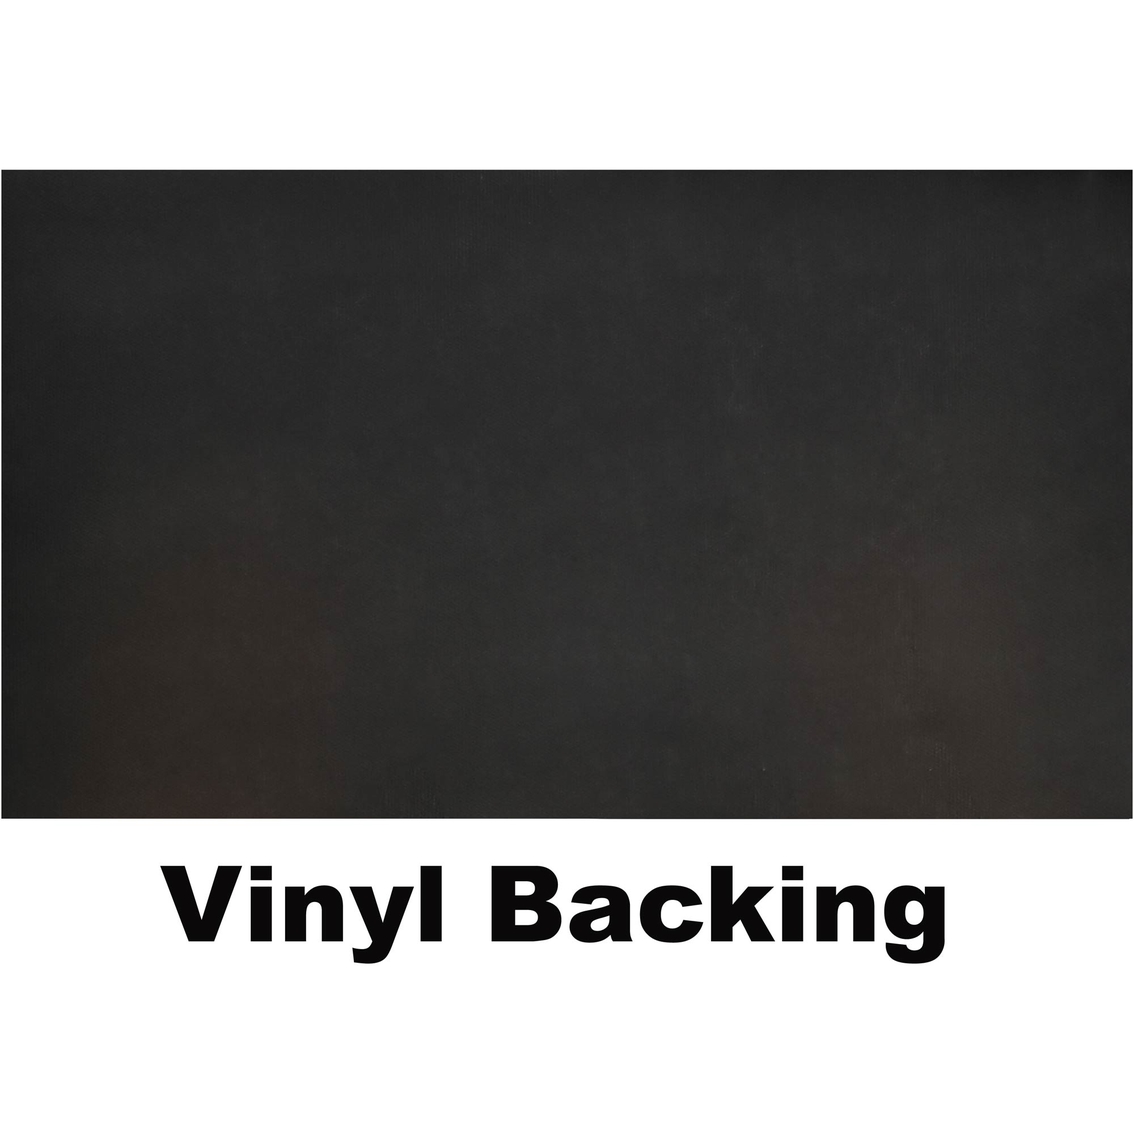 Calloway Mills 24 x 48 in. Natural Coir and Vinyl Doormat - Image 3 of 4